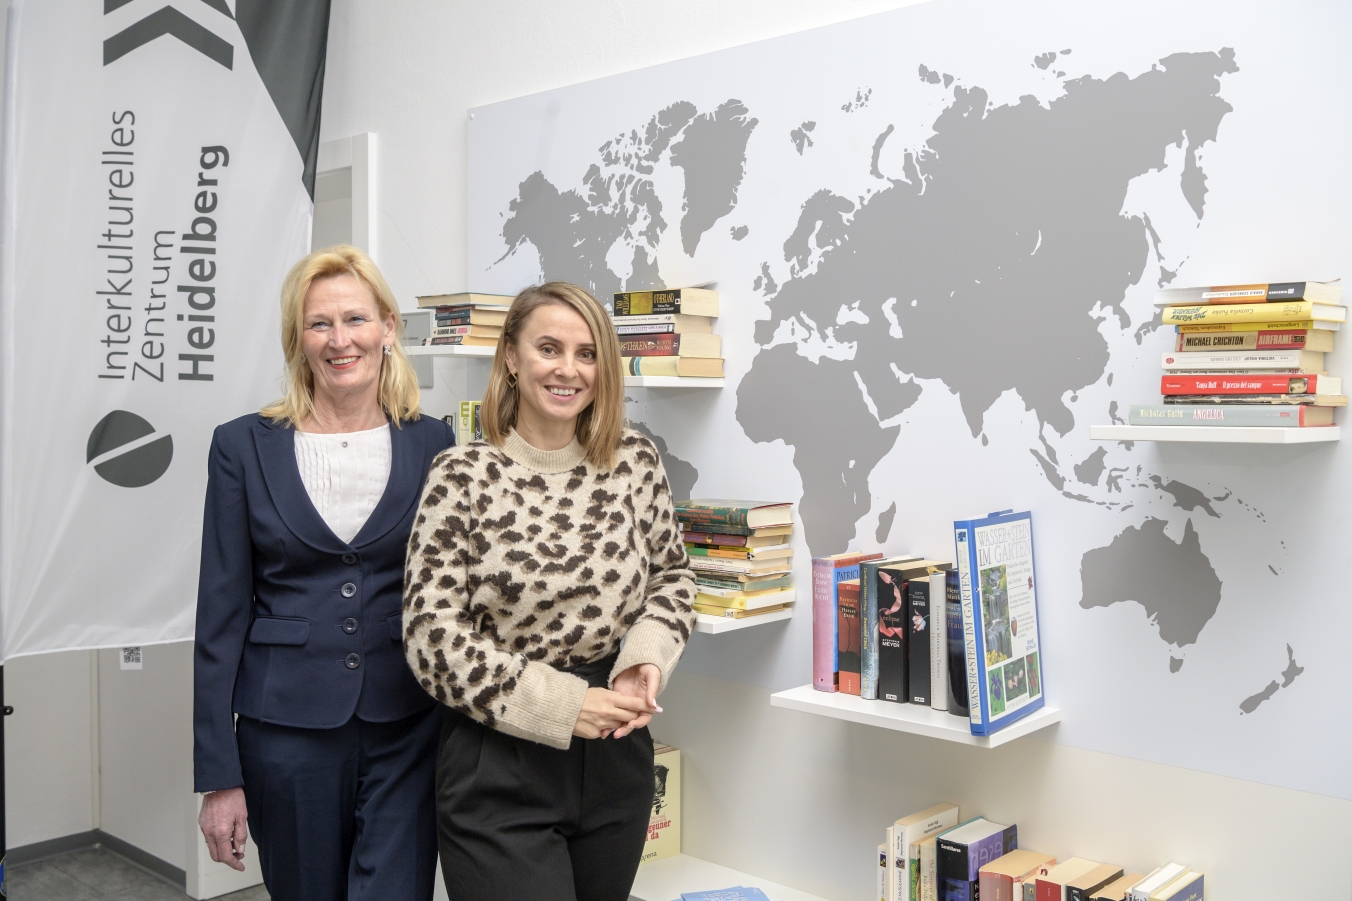 Sie haben das Projekt "International Welcome Center" verwirklicht: Carola de Wit (links), bis zu ihrem kürzlichen Ruhestand Chefin der Heidelberger Ausländerbehörde, und Jagoda Marinić, die Leiterin des Interkulturellen Zentrums.